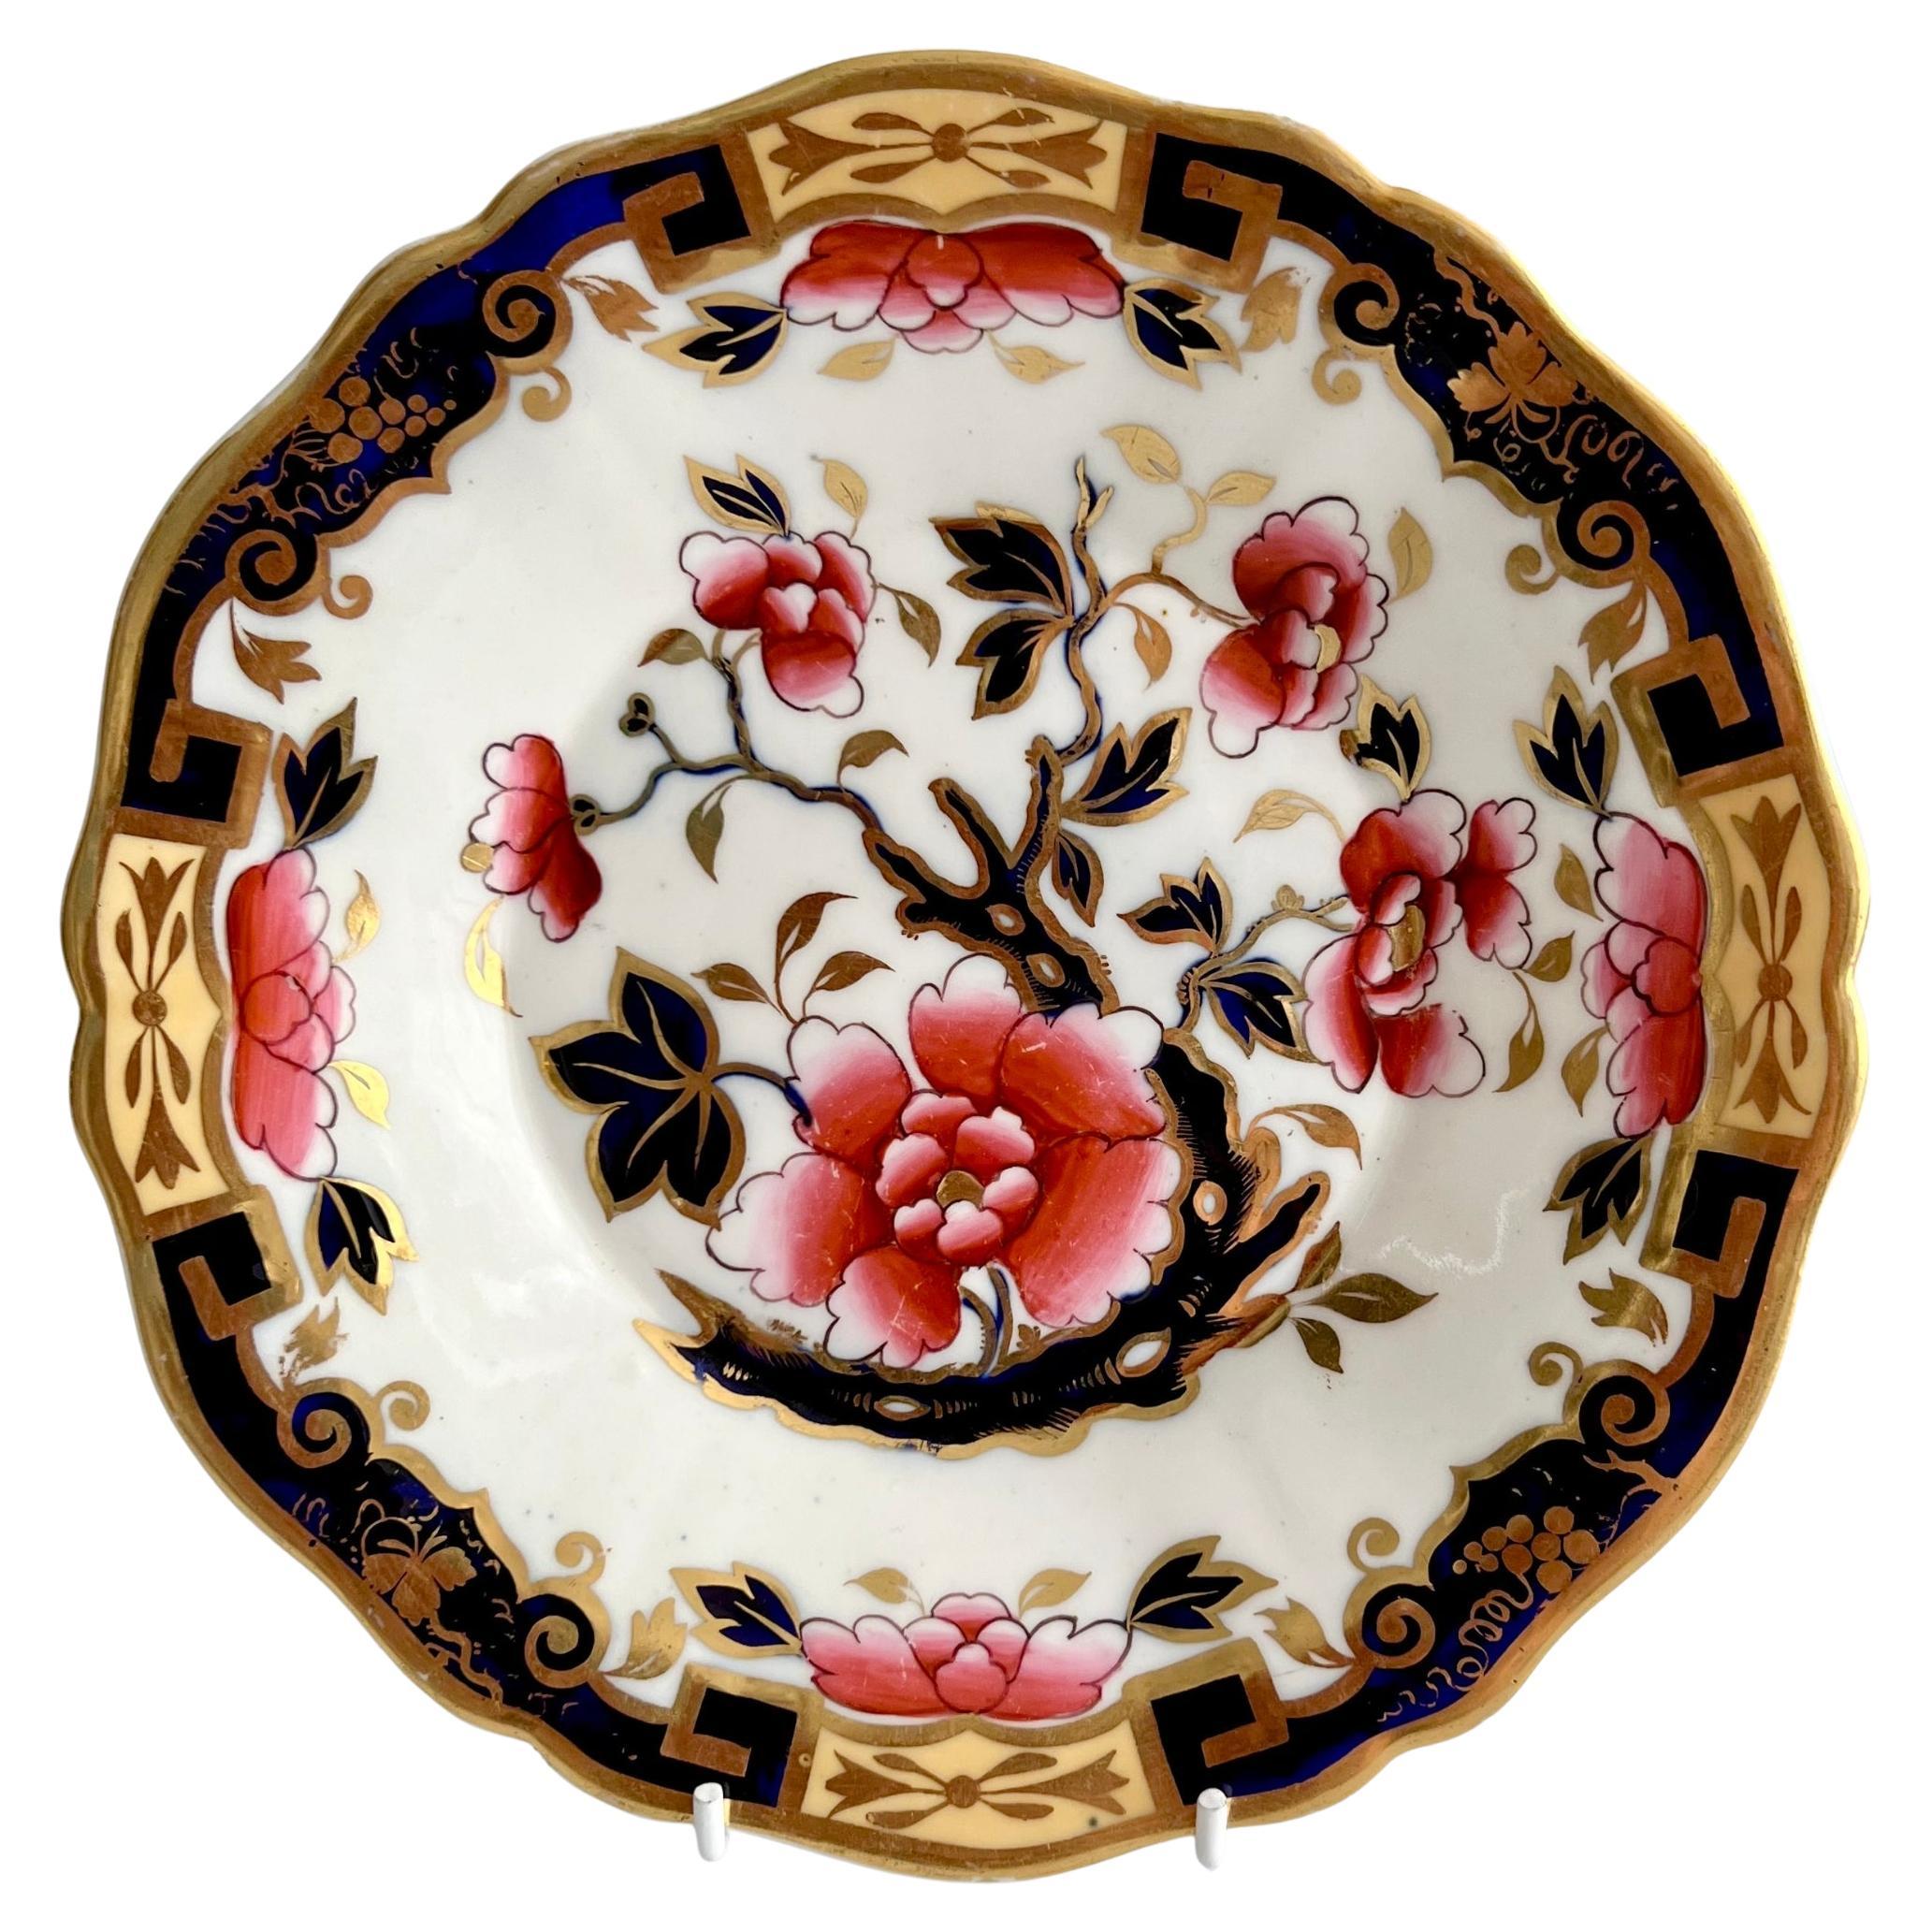 Piatto a piattino Ridgway, fiori giapponesi con chiavi greche, Reggenza, 1825 ca.